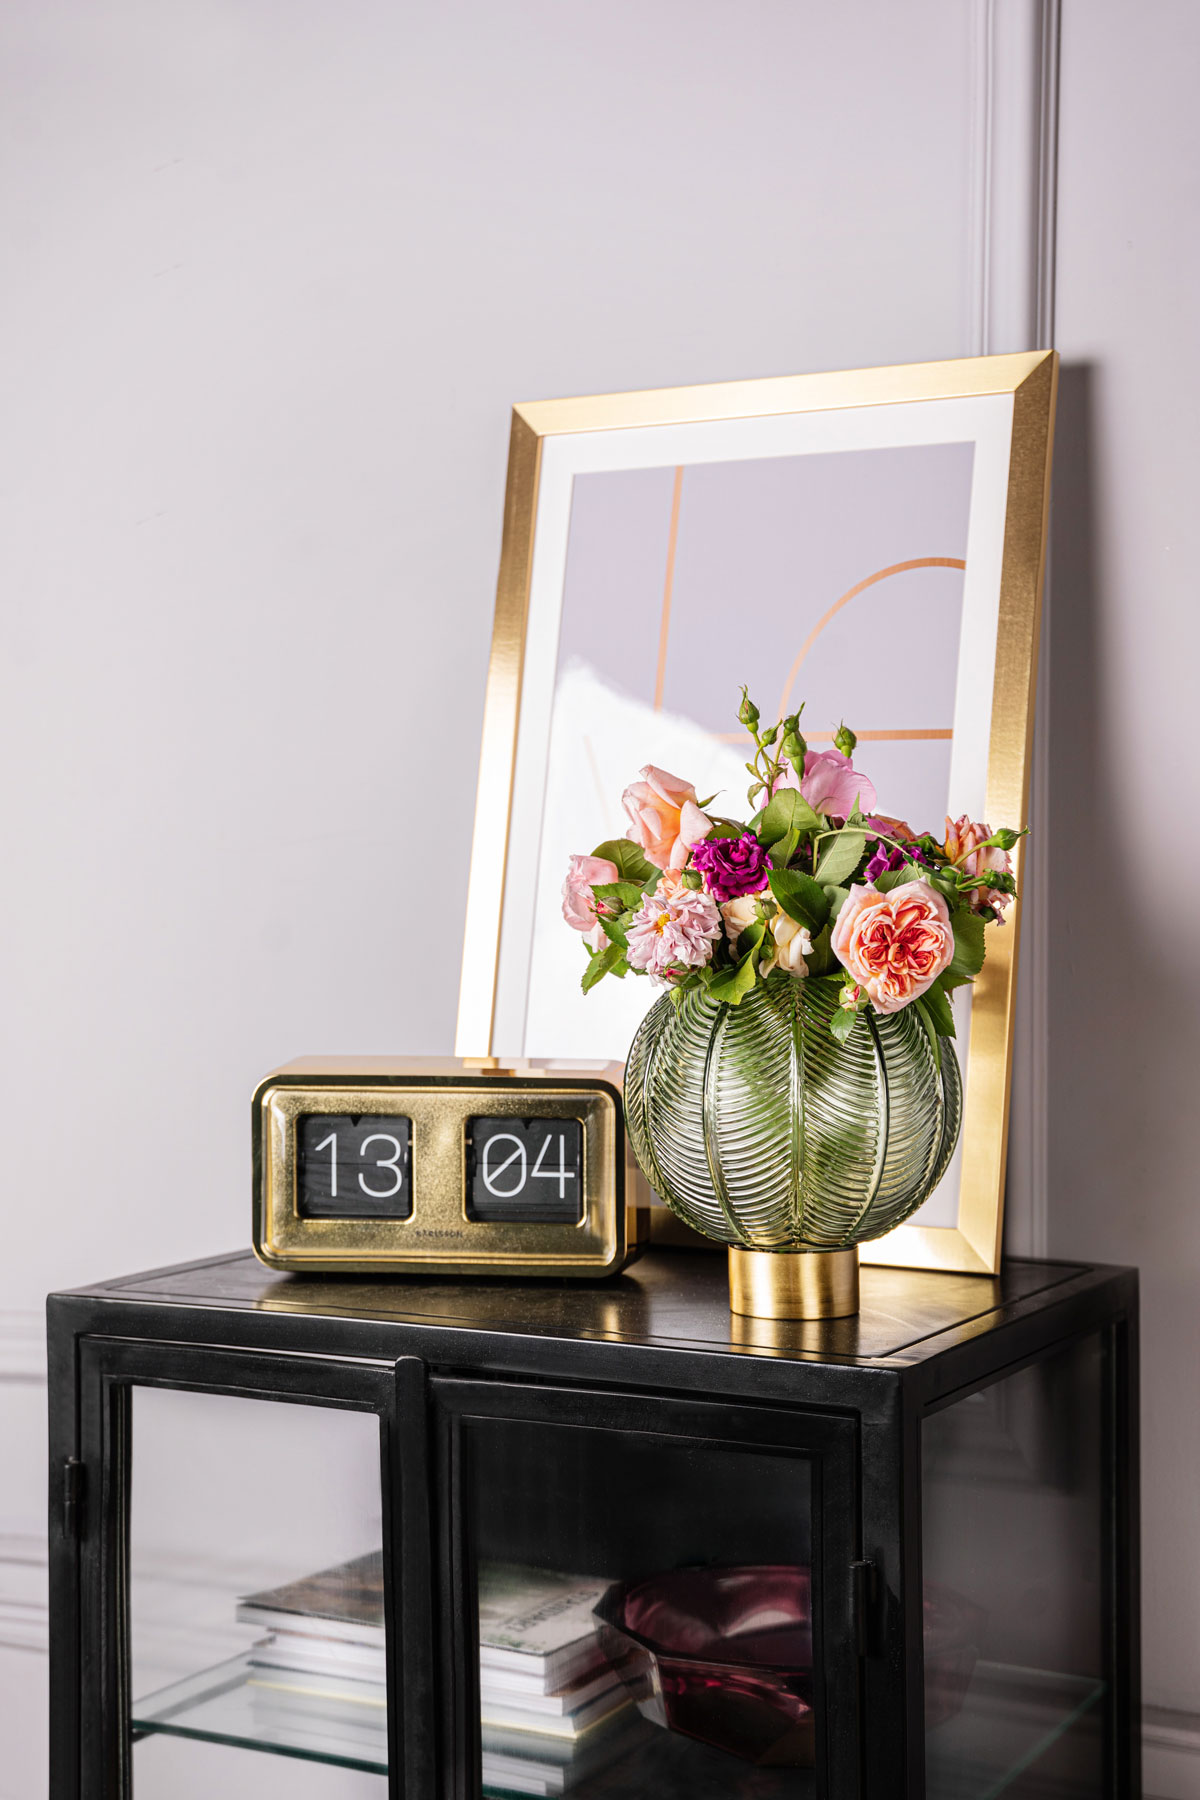 Čierna presklená skrinka so zlatým zrkadlom, retro digitálnymi hodinami a zelenou vintage vázou s kvetmi